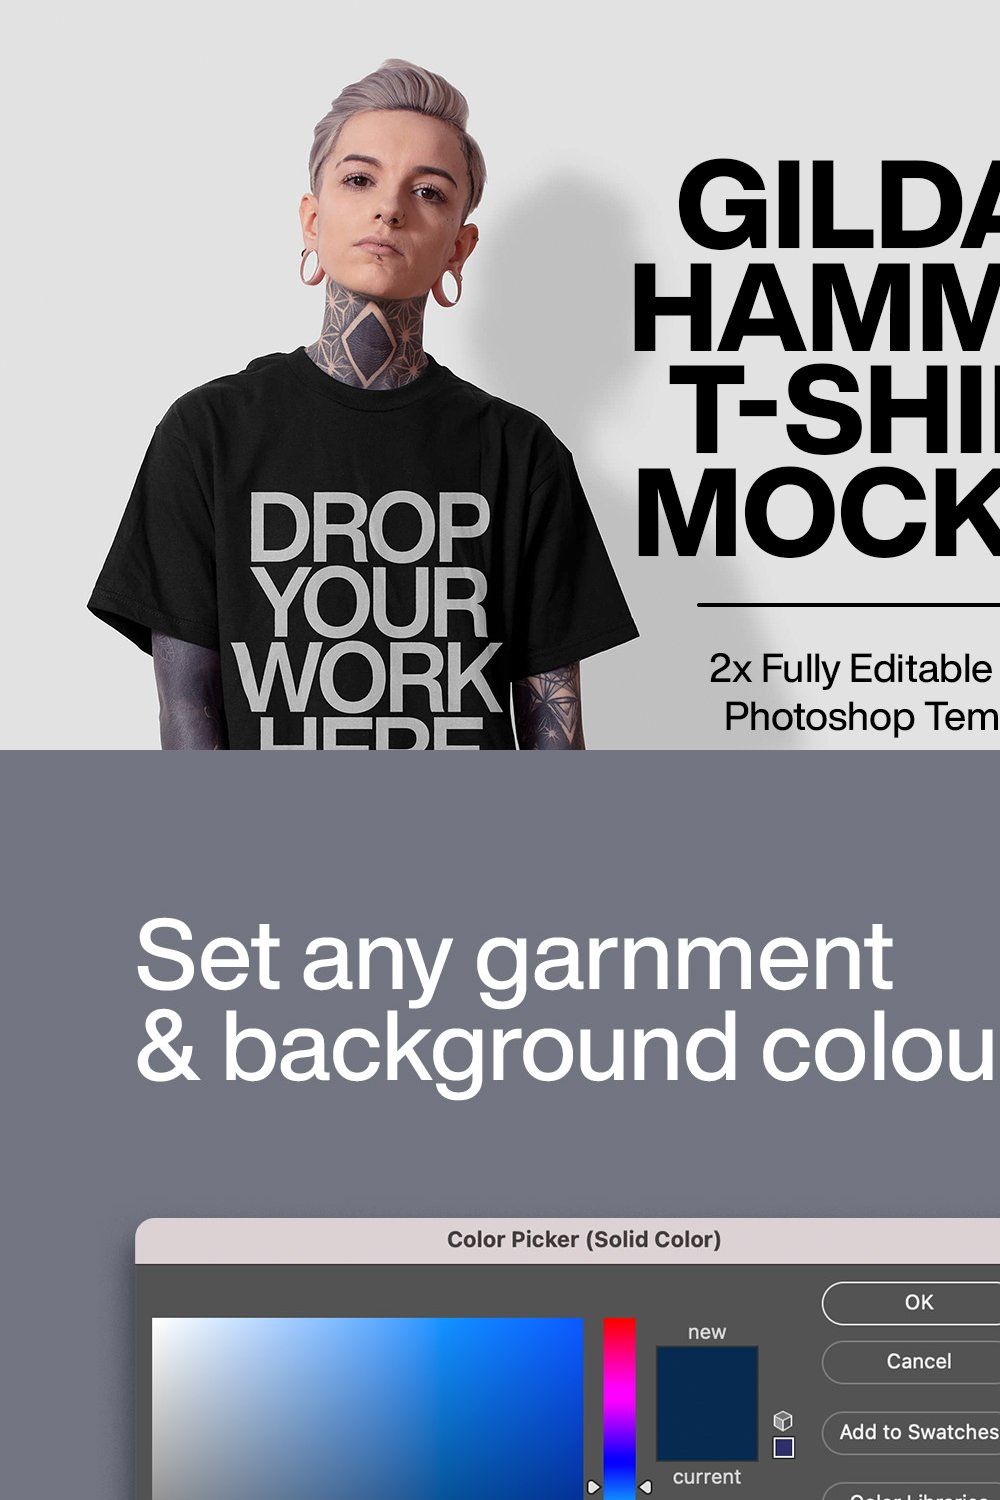 Gilden Hammer T-Shirt Modelled pinterest preview image.